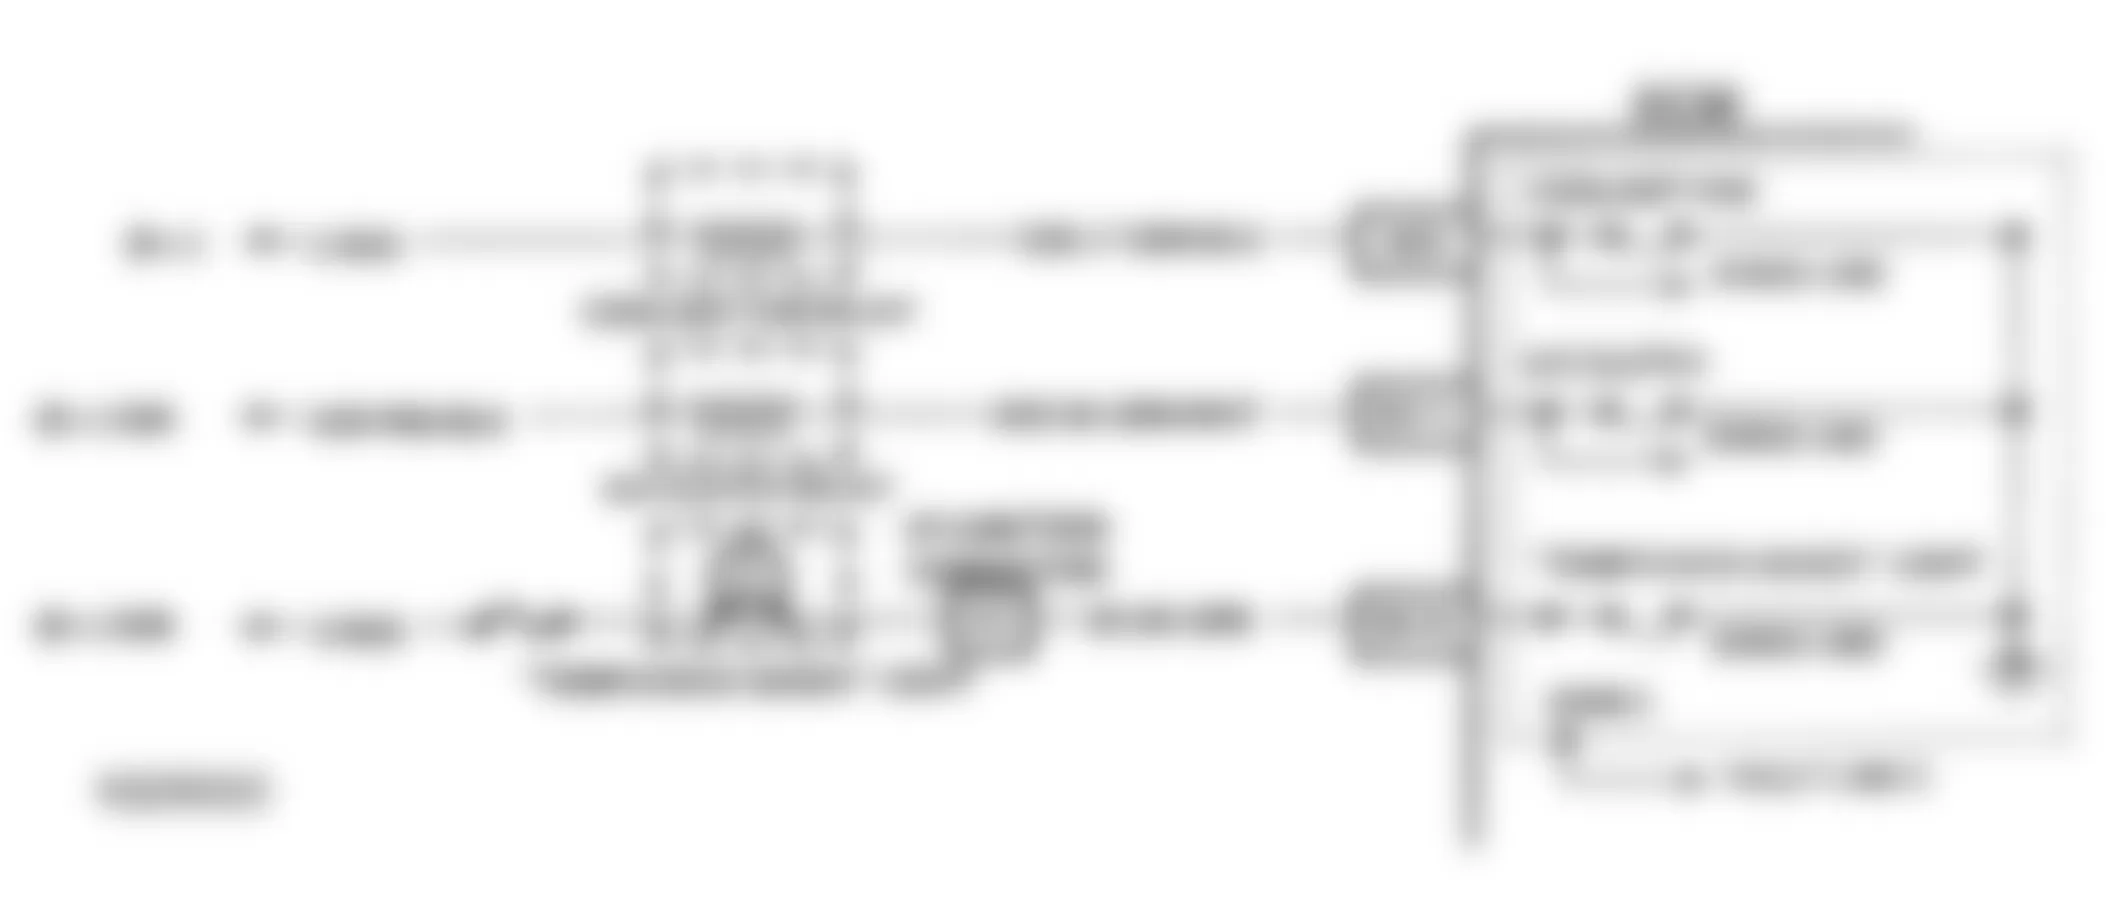 Buick Skylark Custom 1993 - Component Locations -  Code 28 Schematic (2.3L N Body) Quad-Driver No. 2 Error